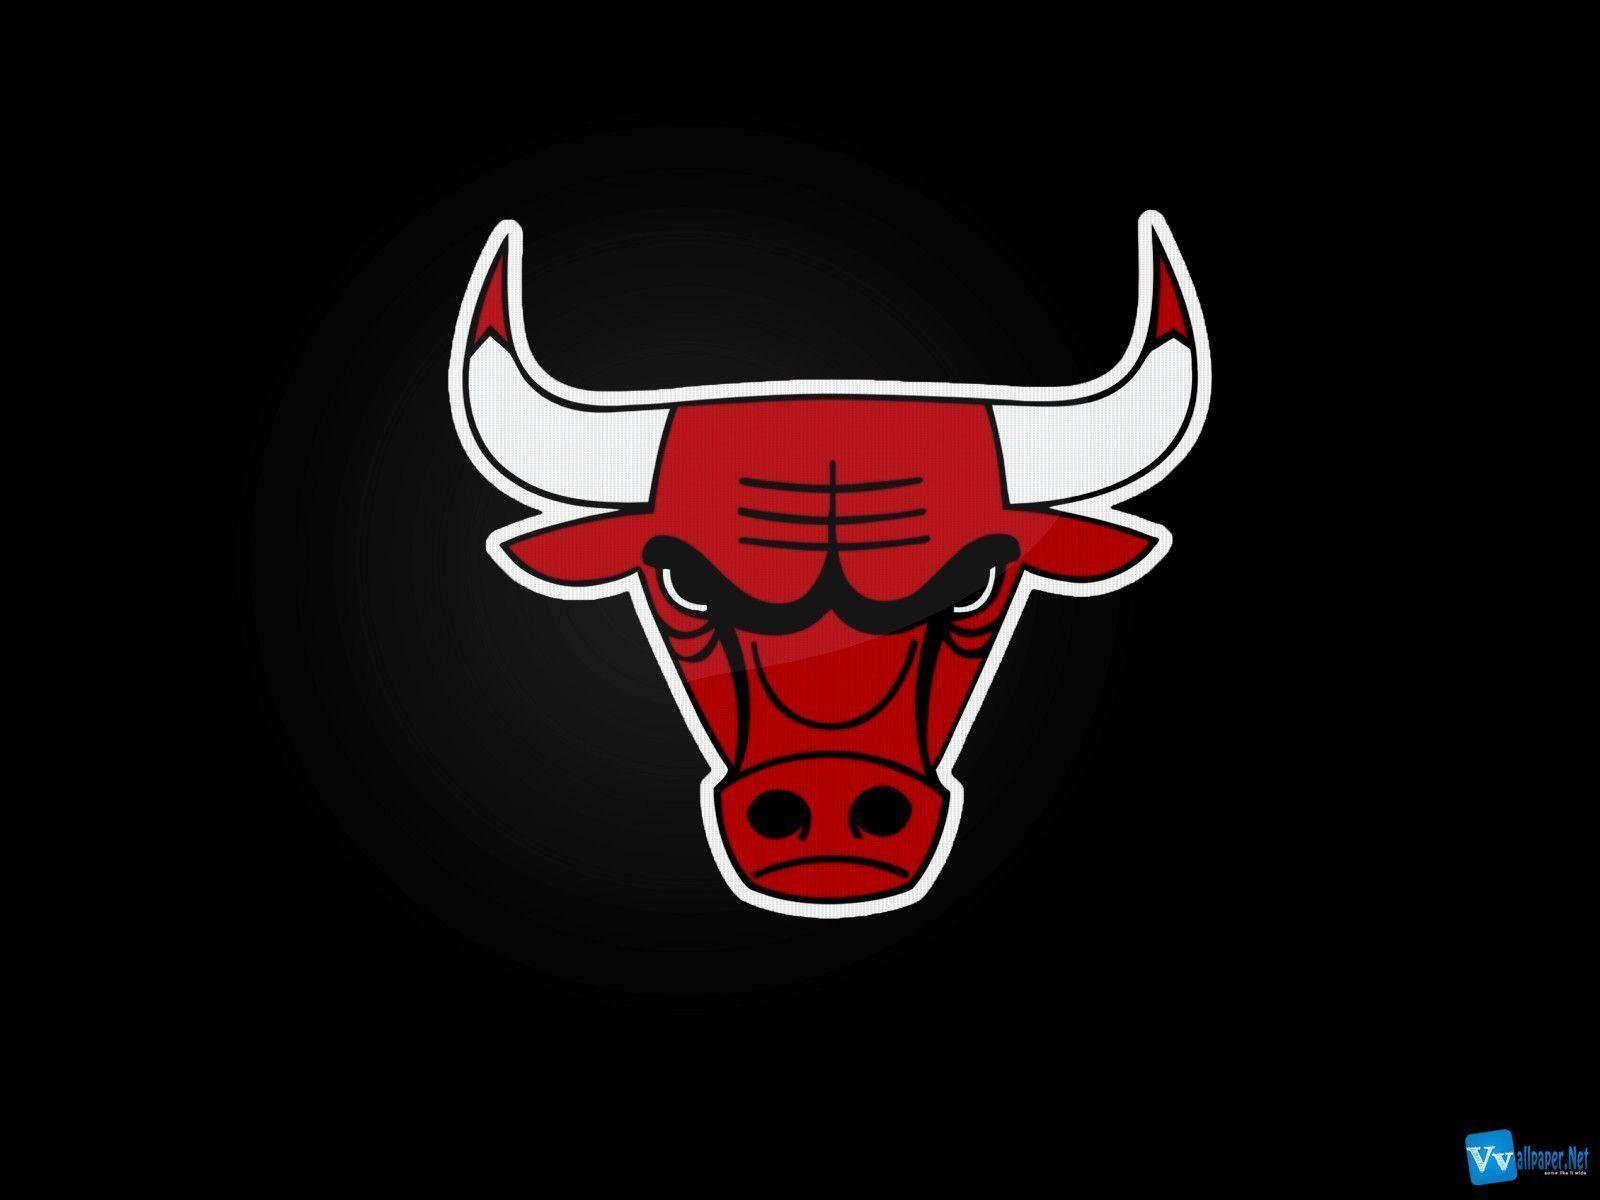 Bulls Logo Duvar Kağıtları / Bulls Logo Wallpapers | NisanBoard